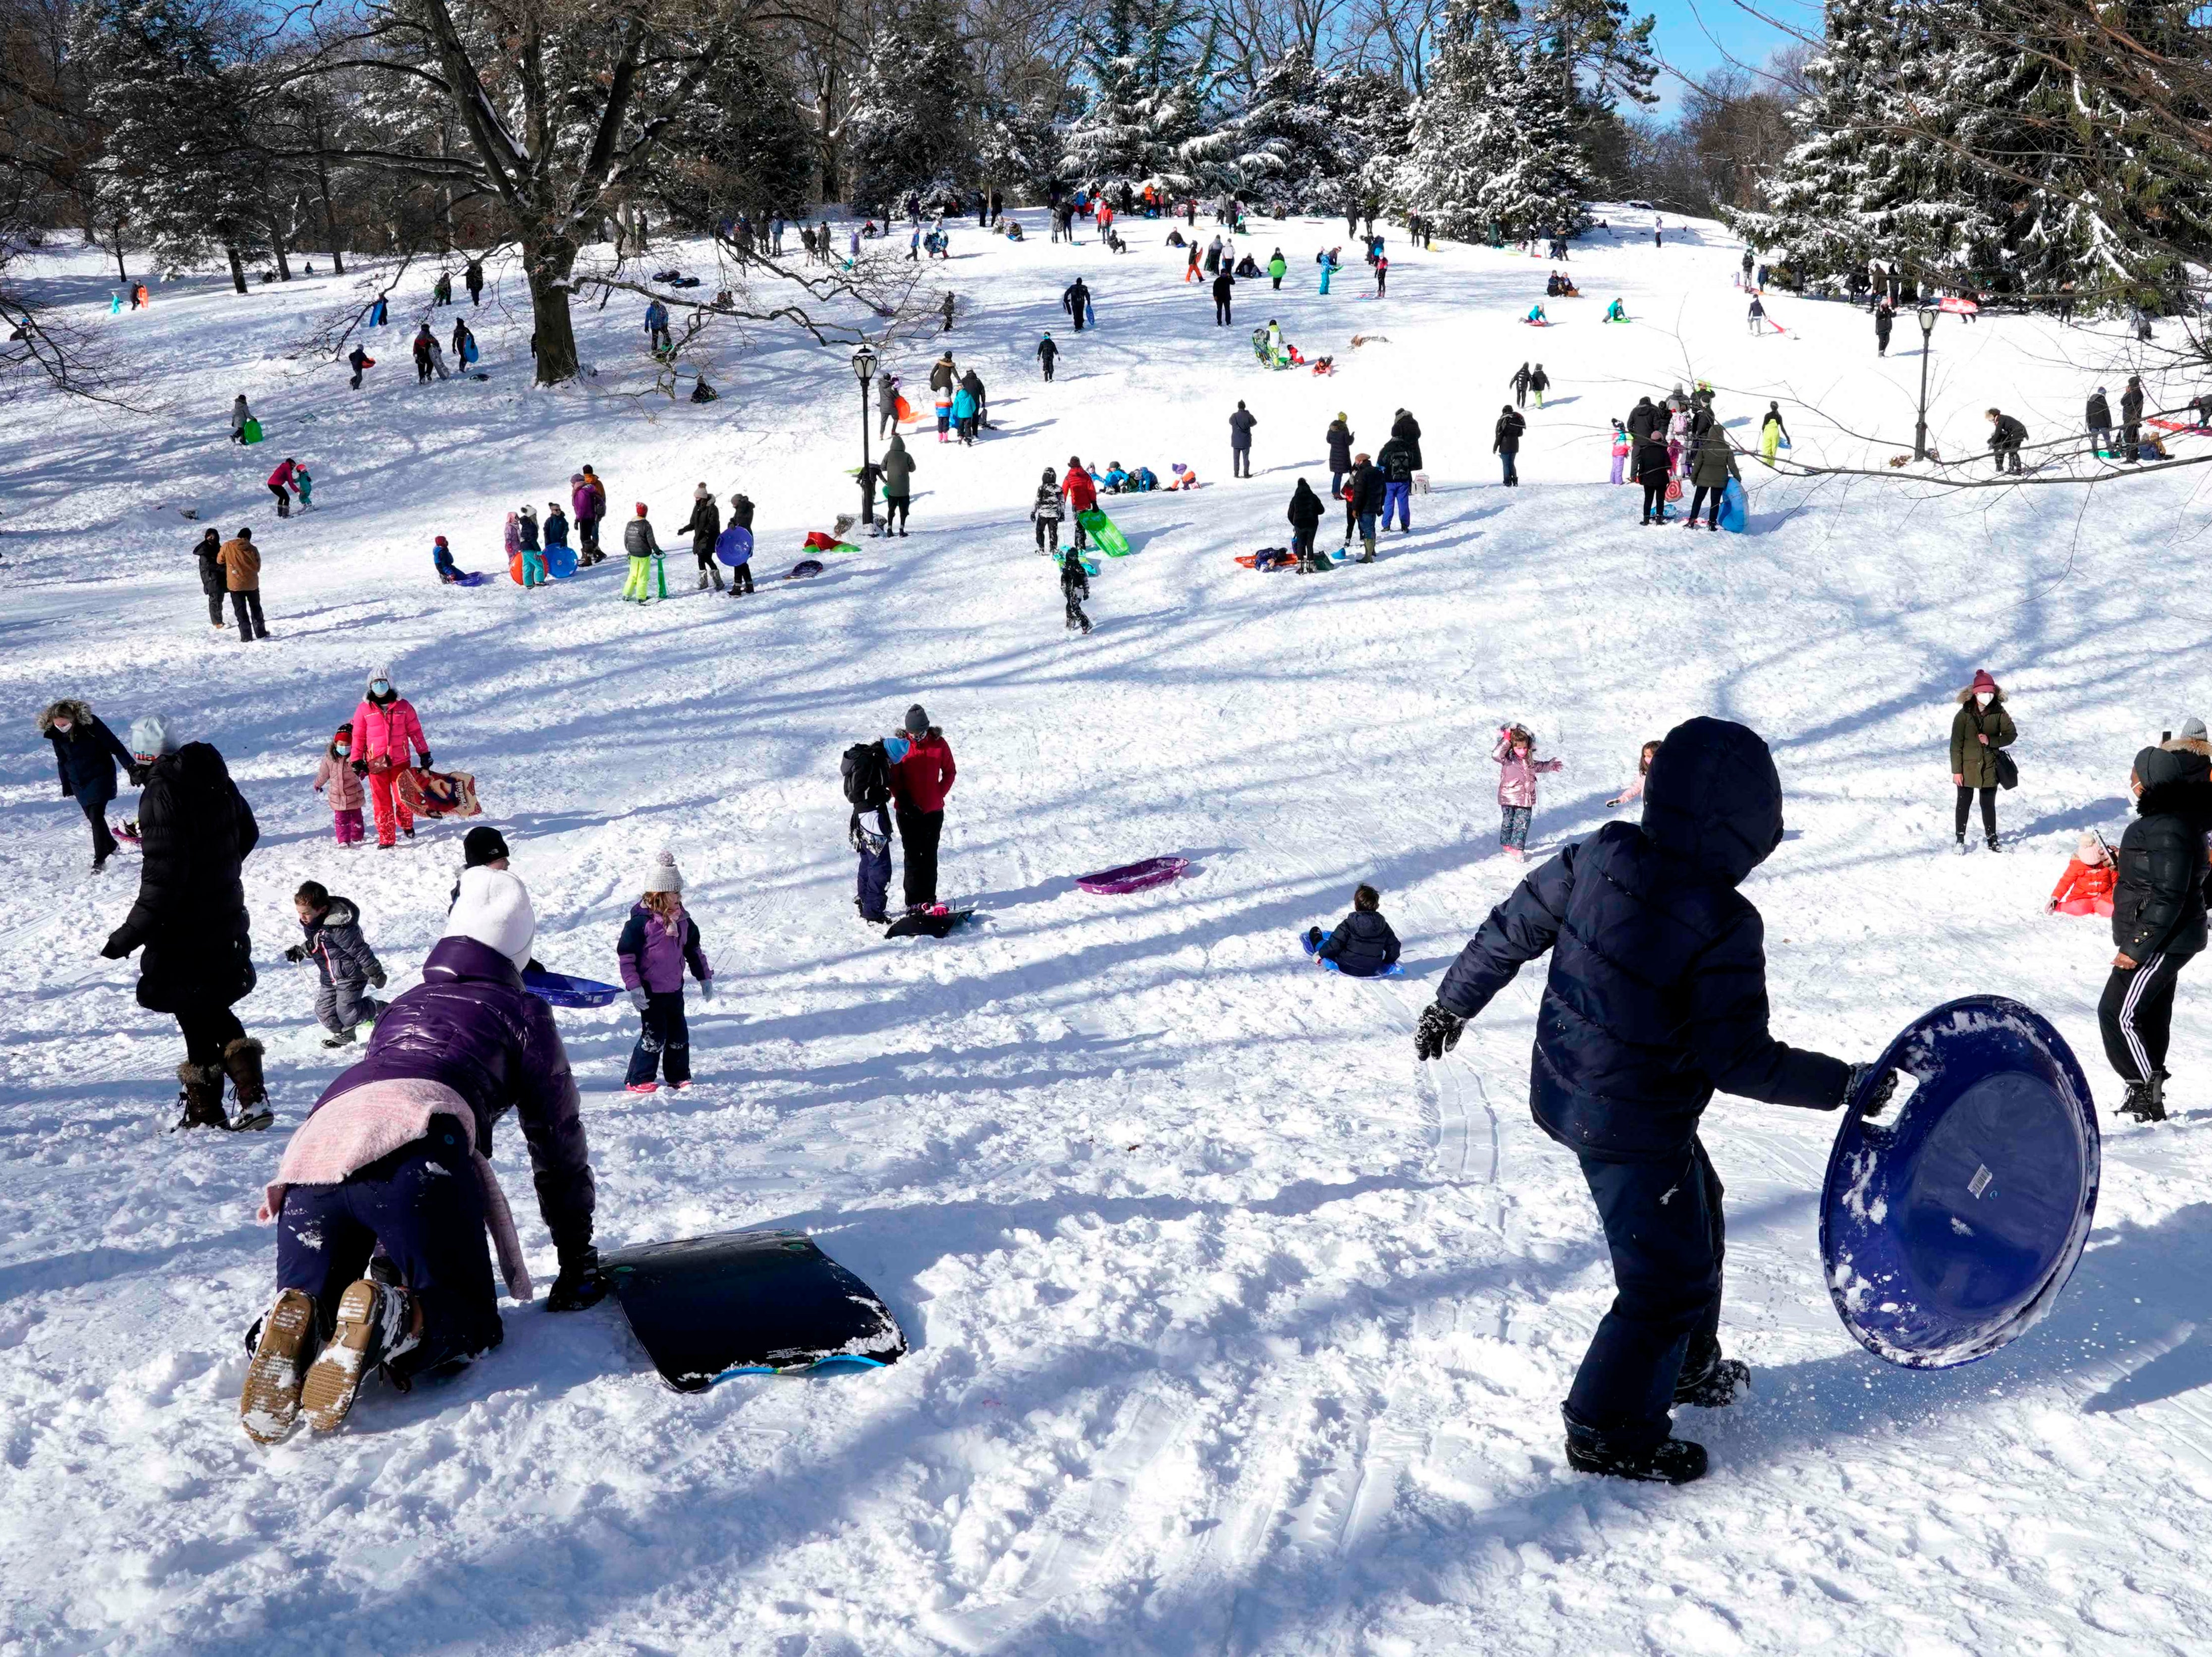 People go sledding on Central Park's Pilgrim Hill in New York on December 17, 2020.